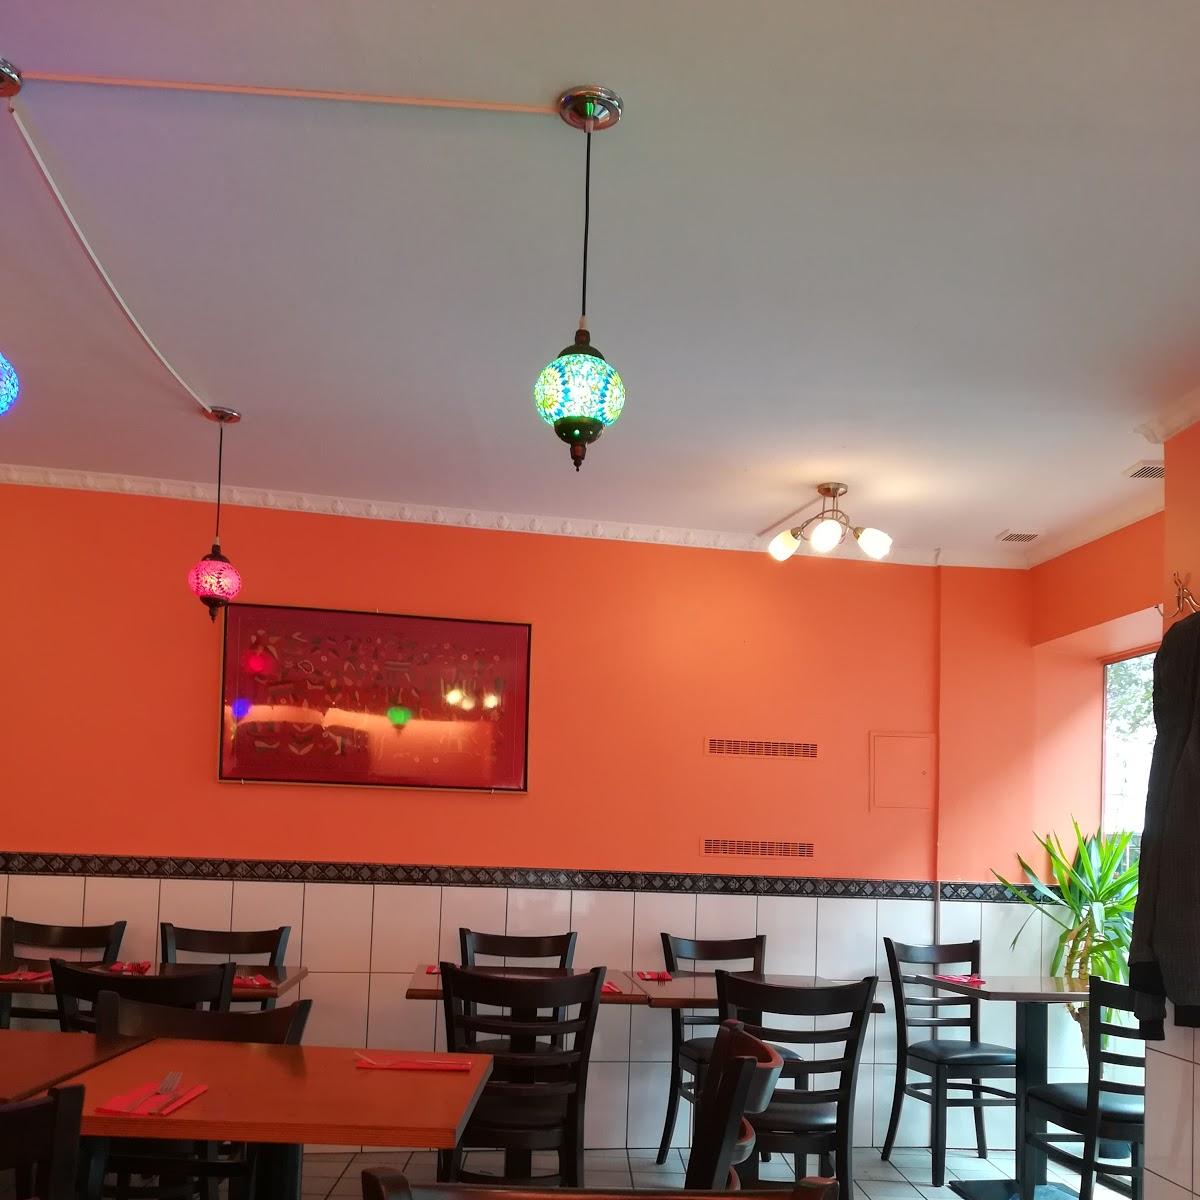 Restaurant "Indian Masala" in Köln